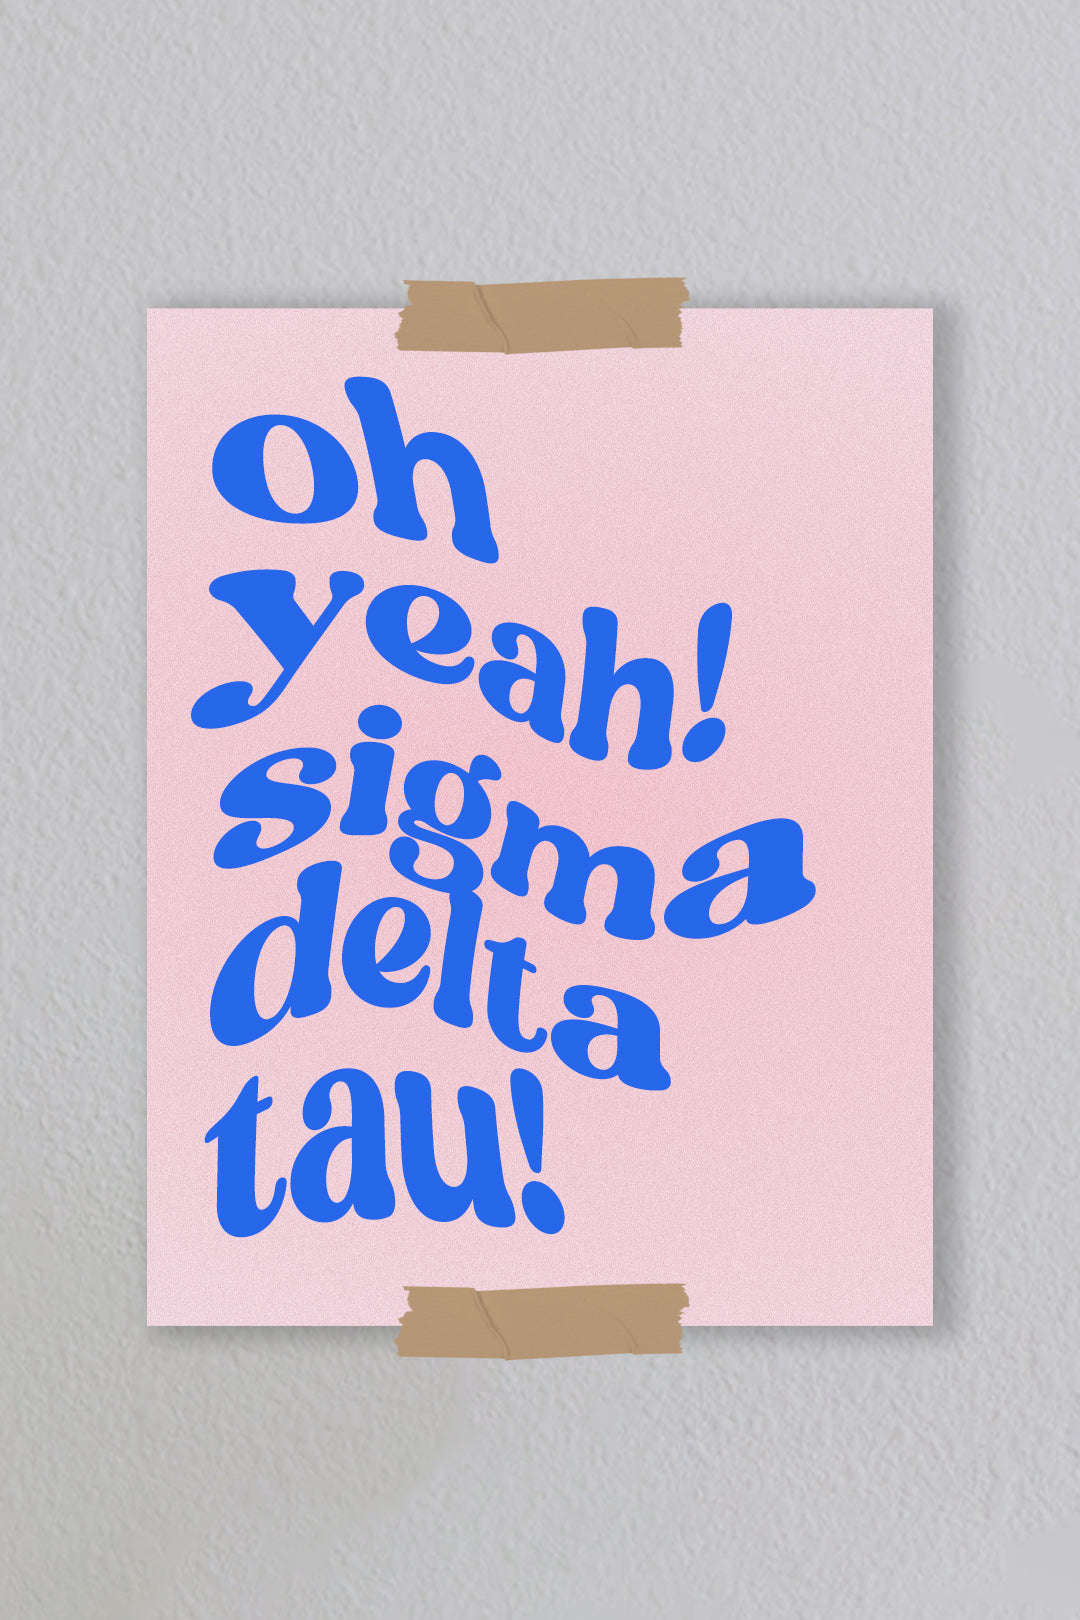 Sigma Delta Tau - Art Print #11 (8.5x11)